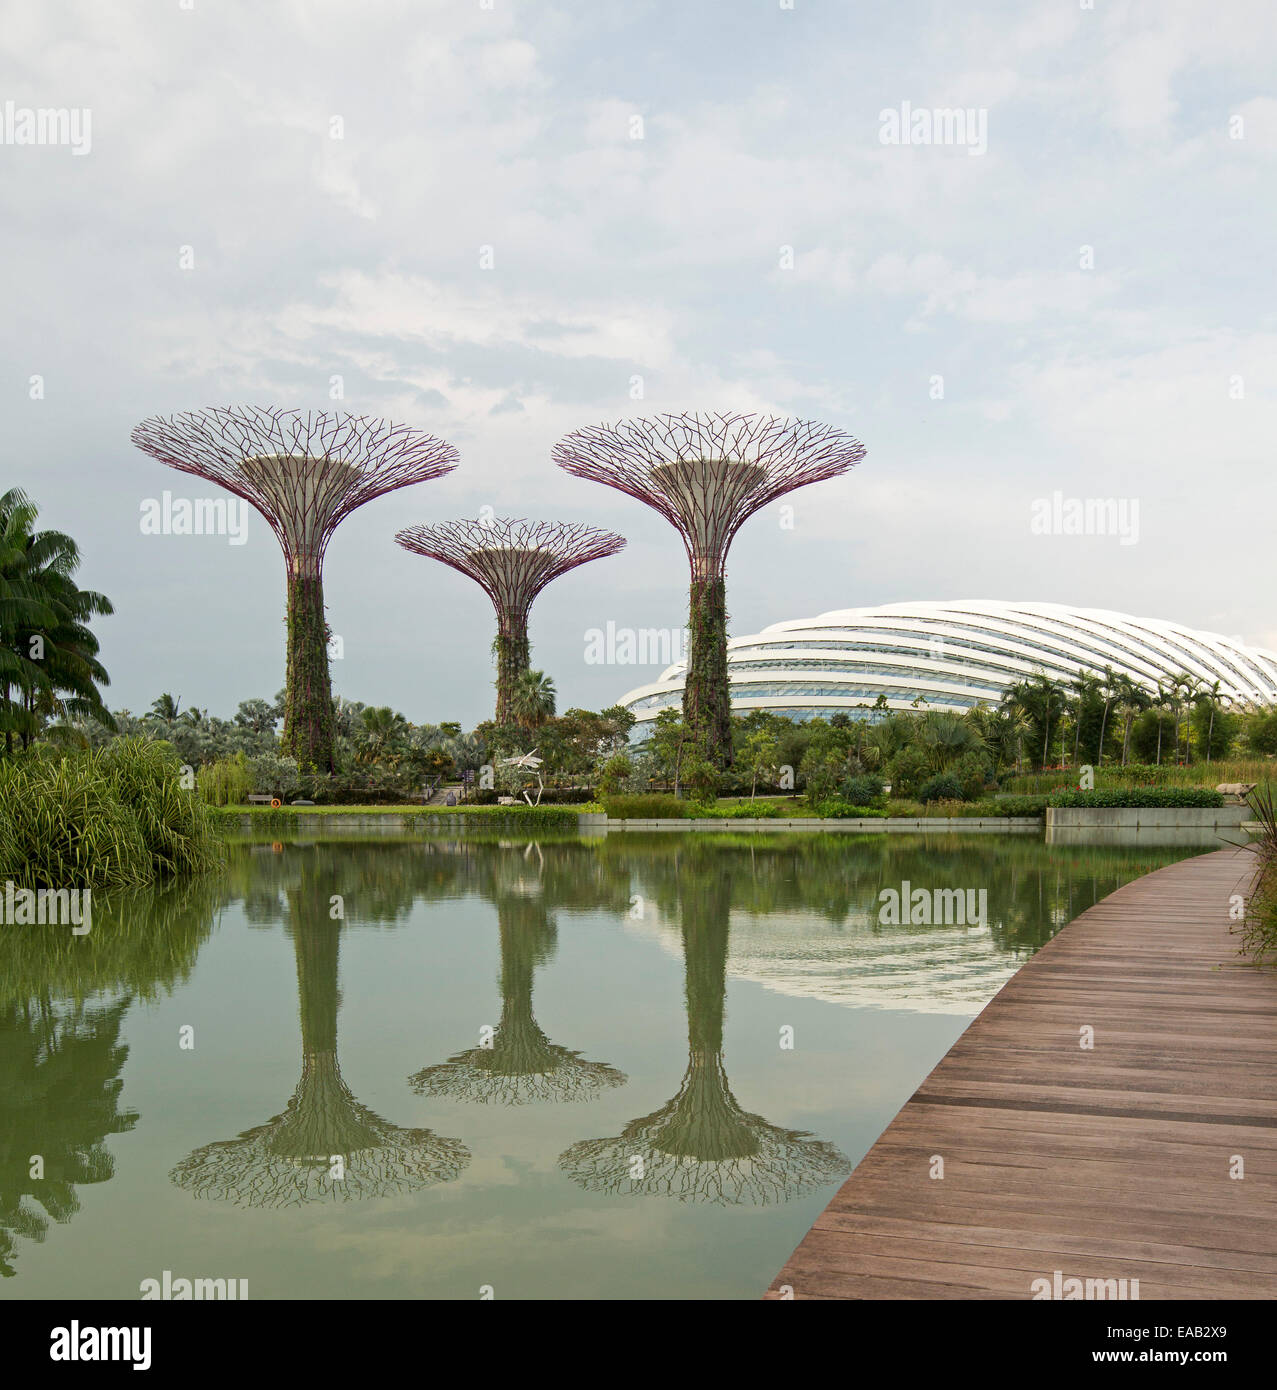 Les arbres artificiels haut unique et immense coupole en verre / véranda reflète dans les eaux calmes du lac, les jardins de la Baie , Singapour Banque D'Images